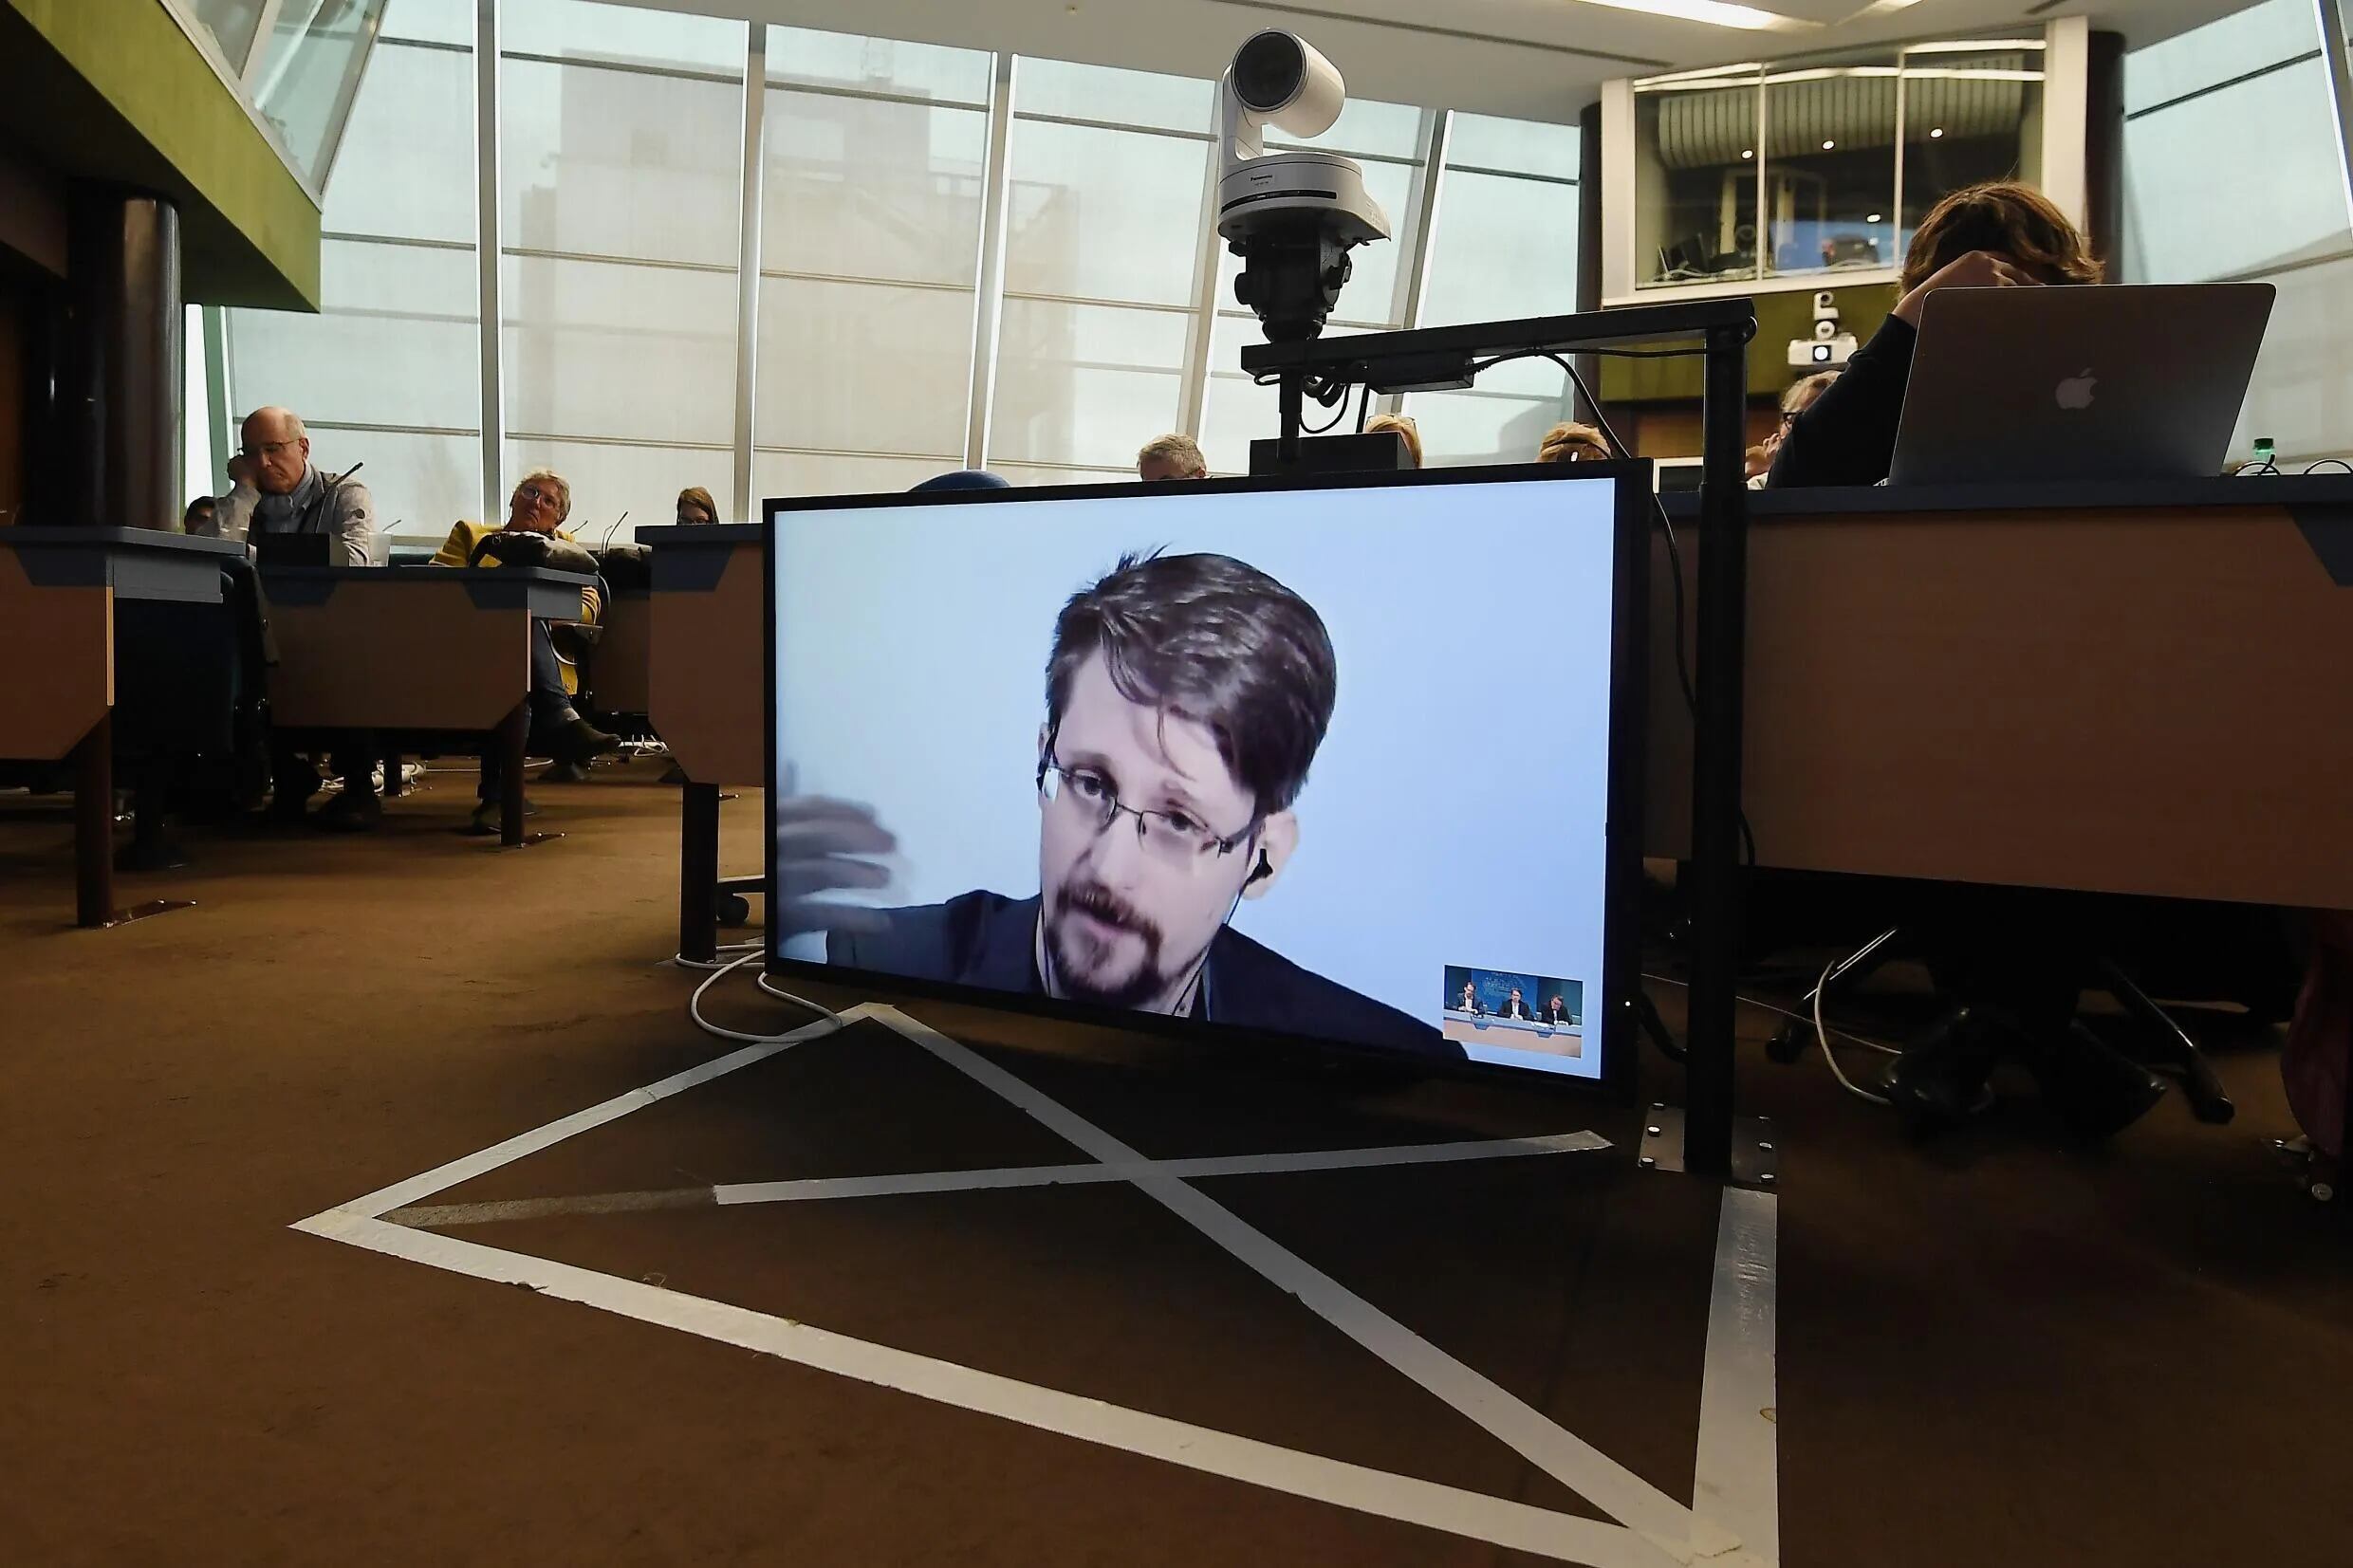 Edward Snowden participa por videoconferencia desde Rusia en una mesa redonda el 15 de marzo de 2019 en la sede del Consejo de Europa en Estrasburgo, Francia